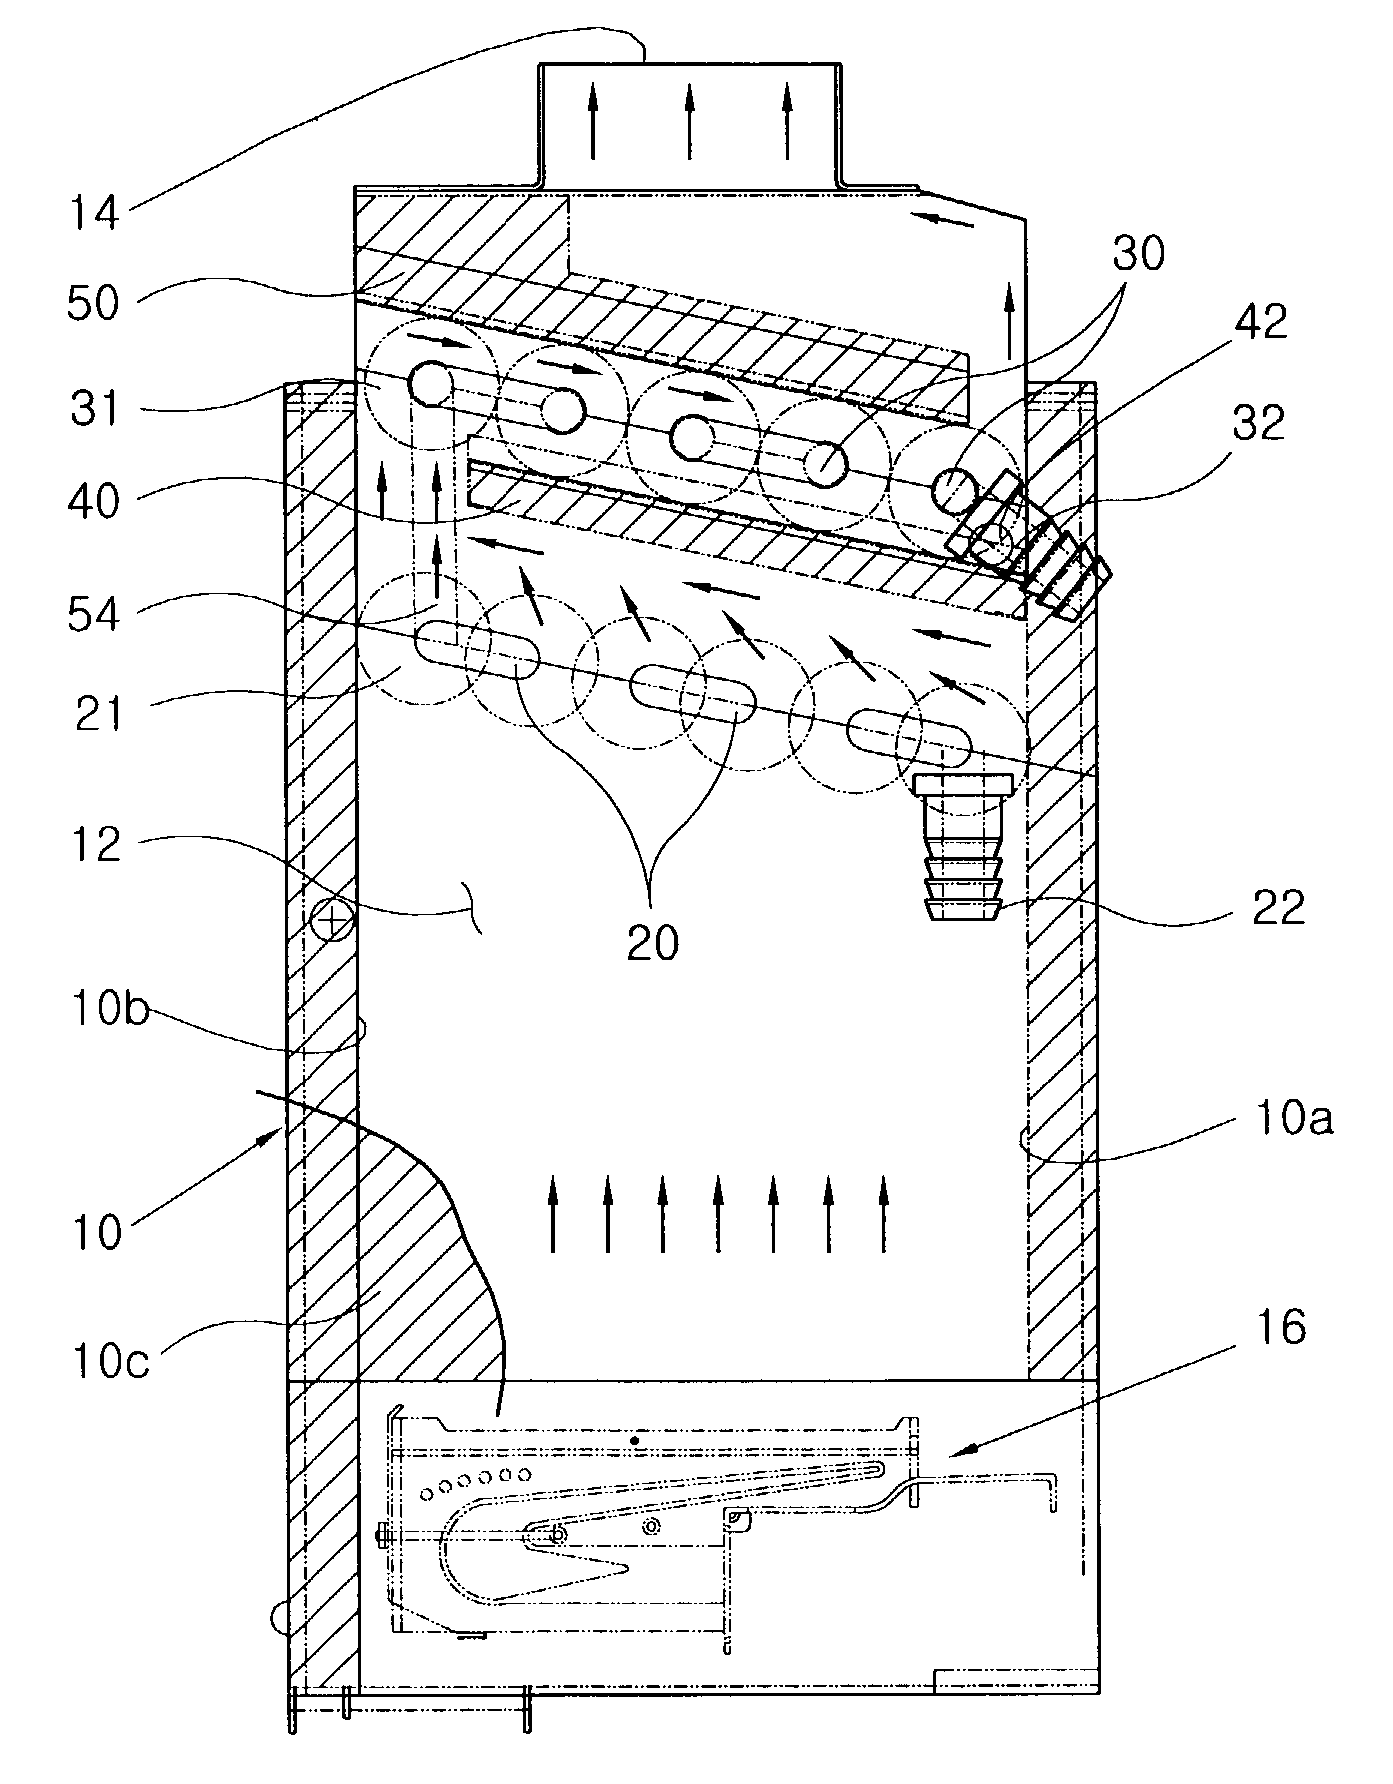 Arrangement structure of heat exchanger in condensing gas boiler